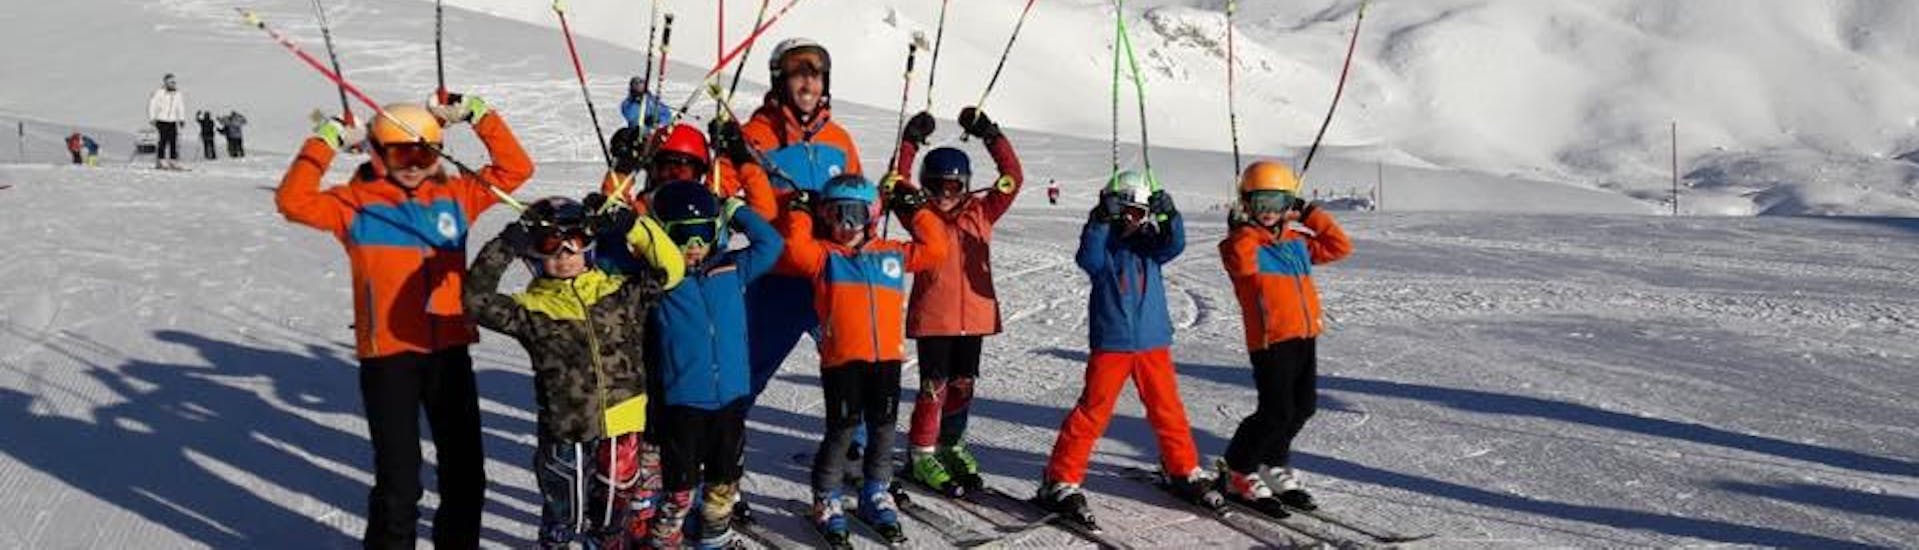 Bambini con istruttore pronti per una delle lezioni di sci per bambini per tutti i livelli a Campo Felice.